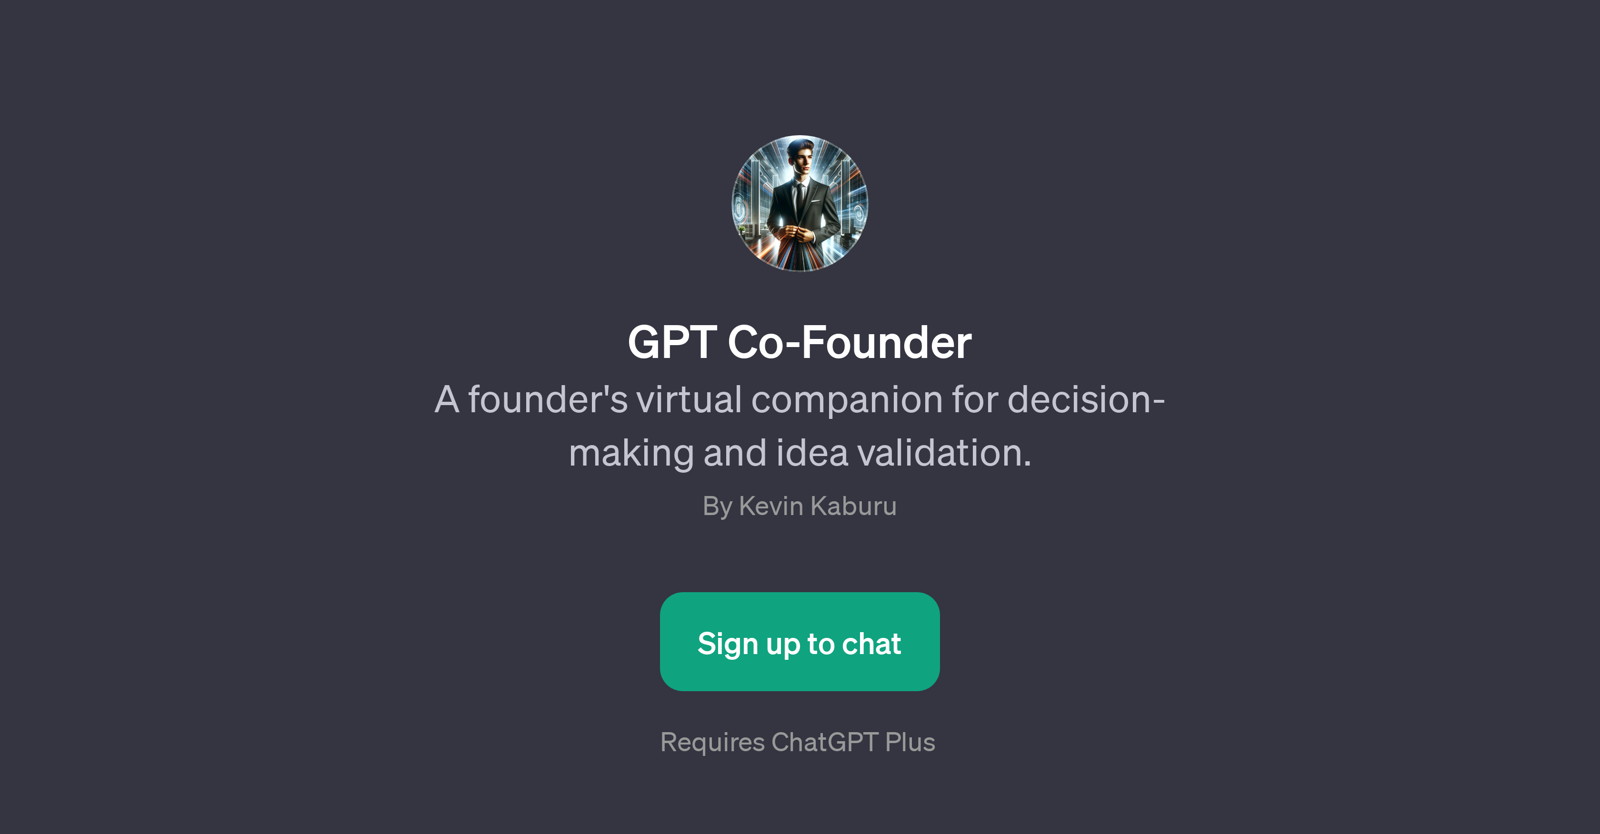 GPT Co-Founder website